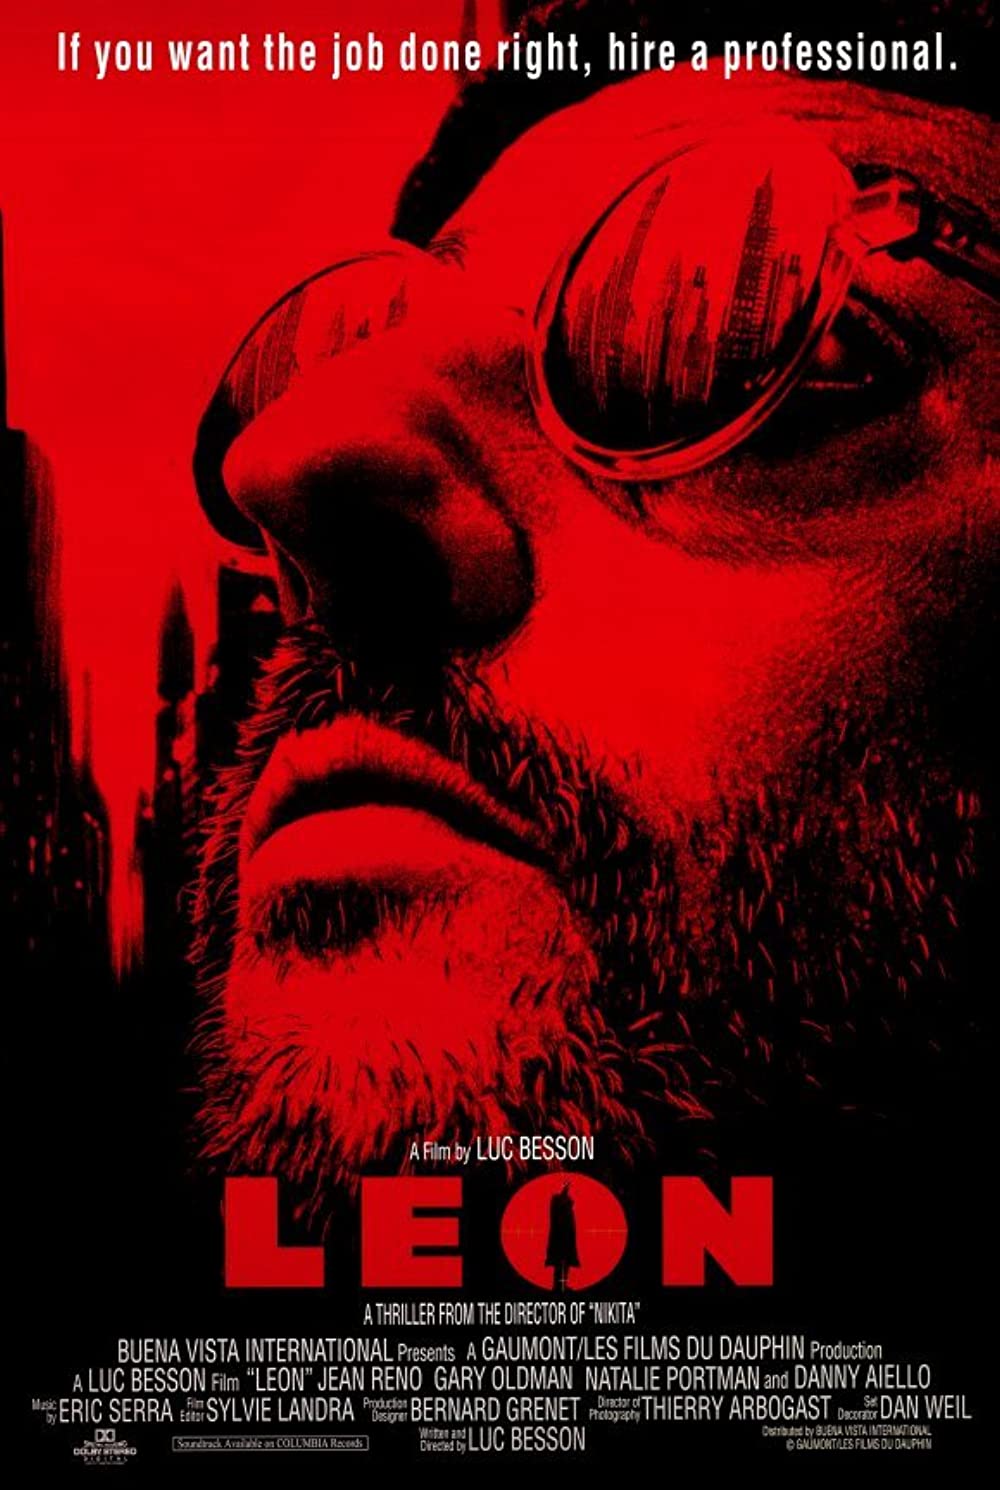 Filmbeschreibung zu Leon, der Profi